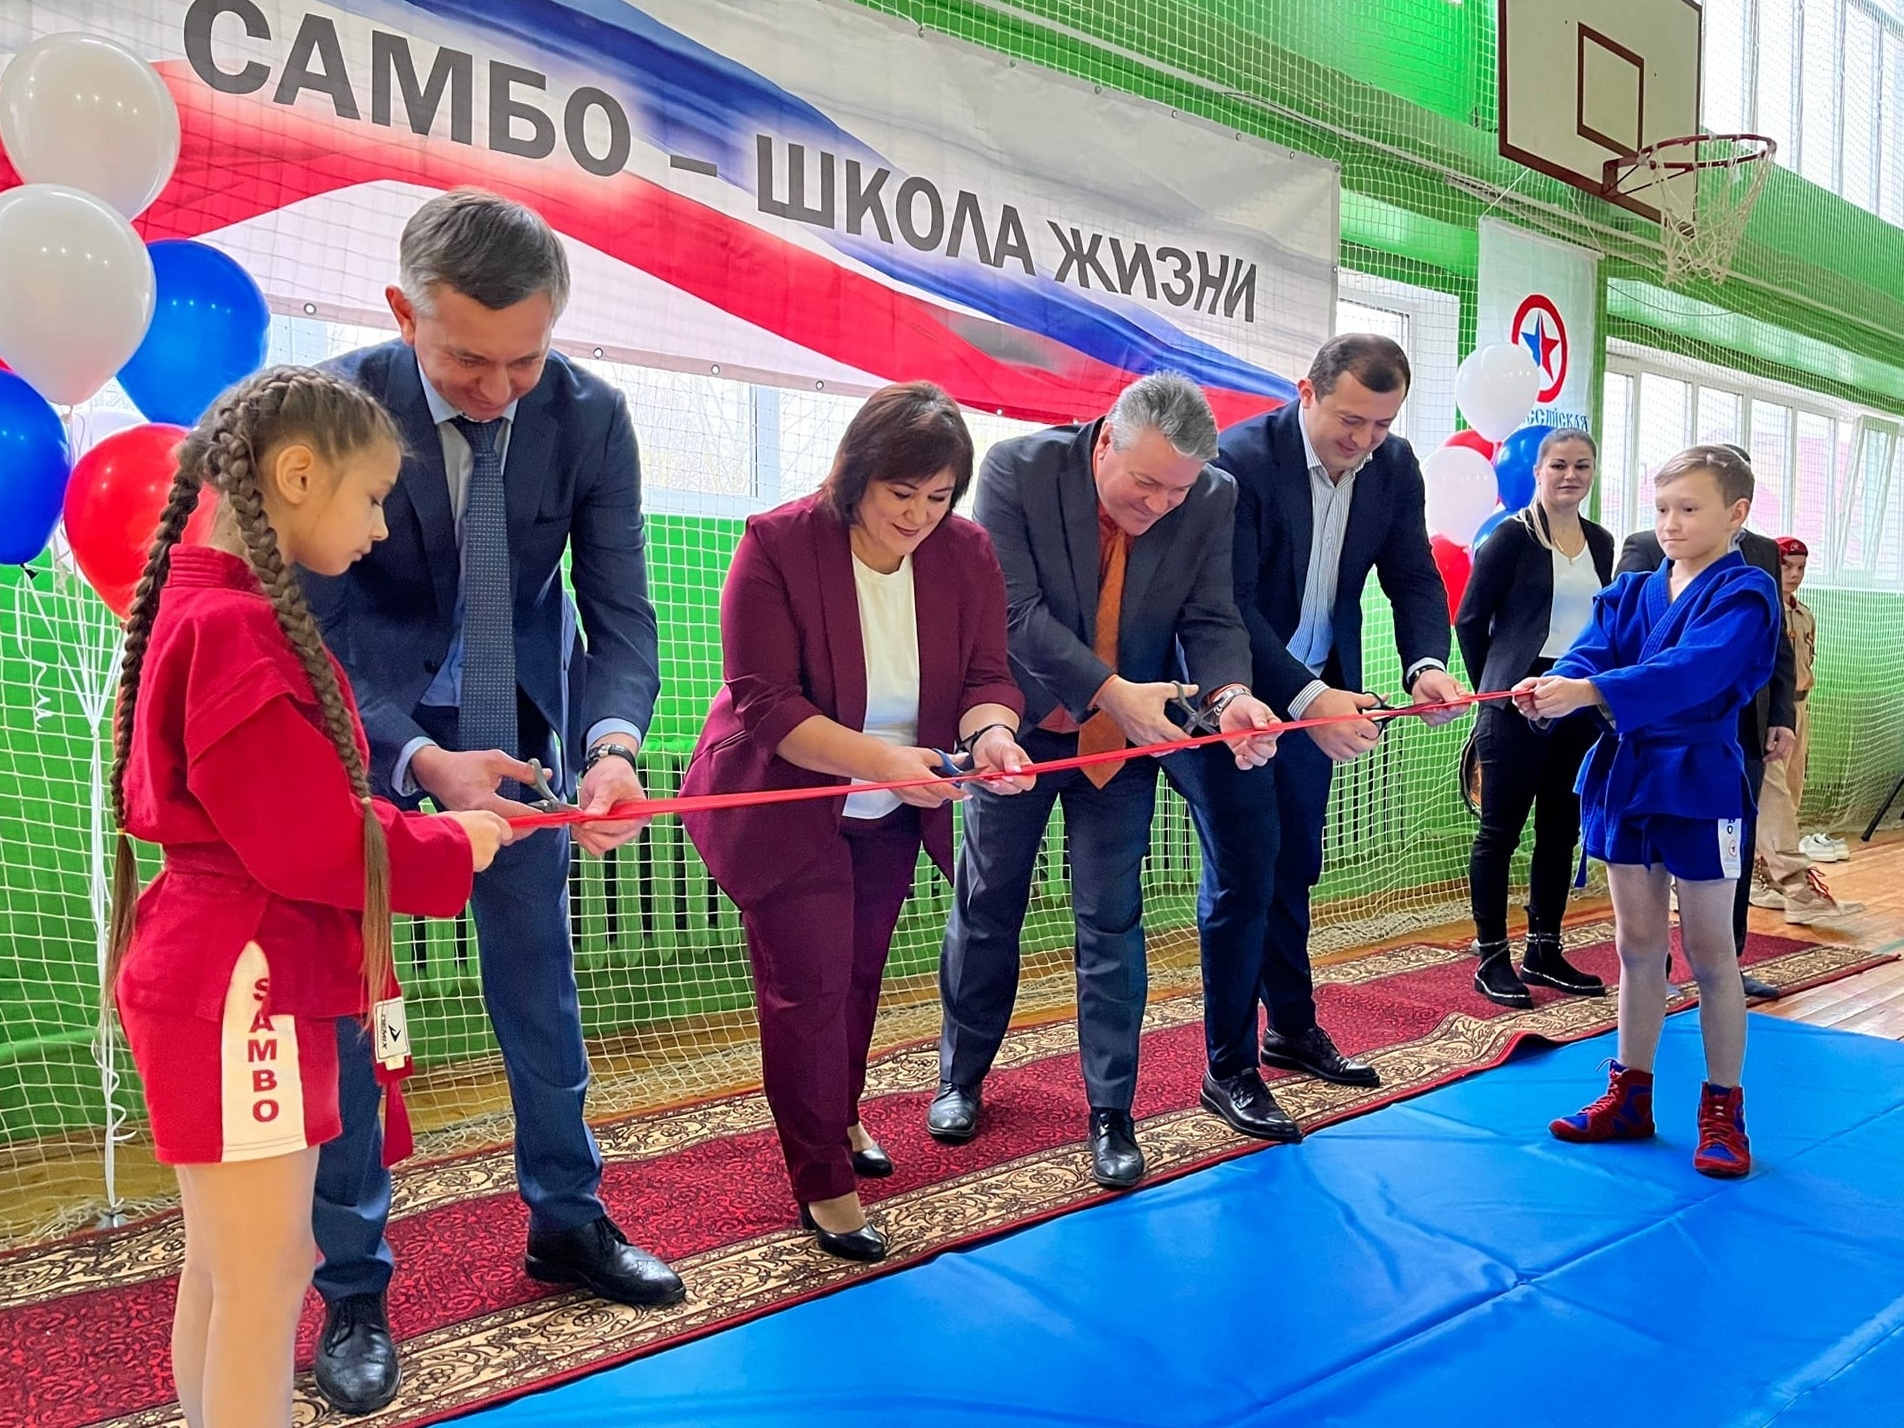 К проекту «Самбо в школу» присоединилась еще одна ярославская школа